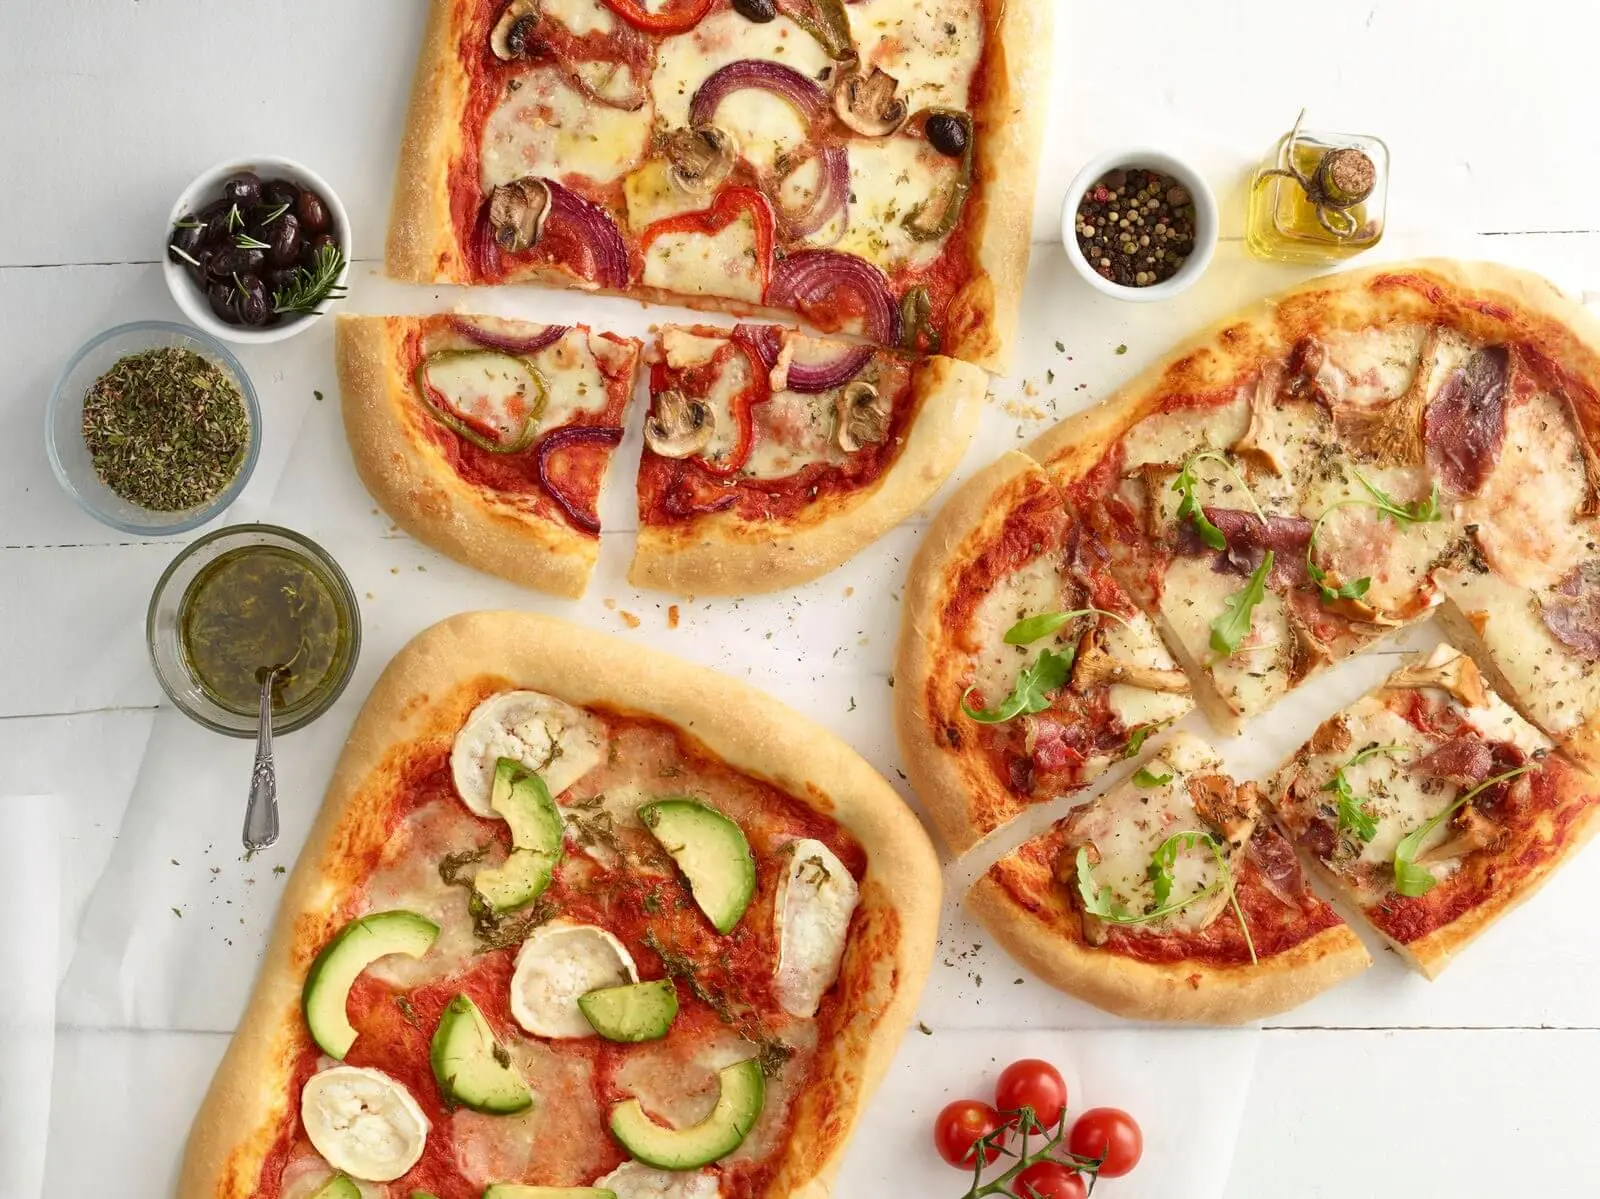 los veganos comen pizza - Qué es lo que no pueden comer los veganos